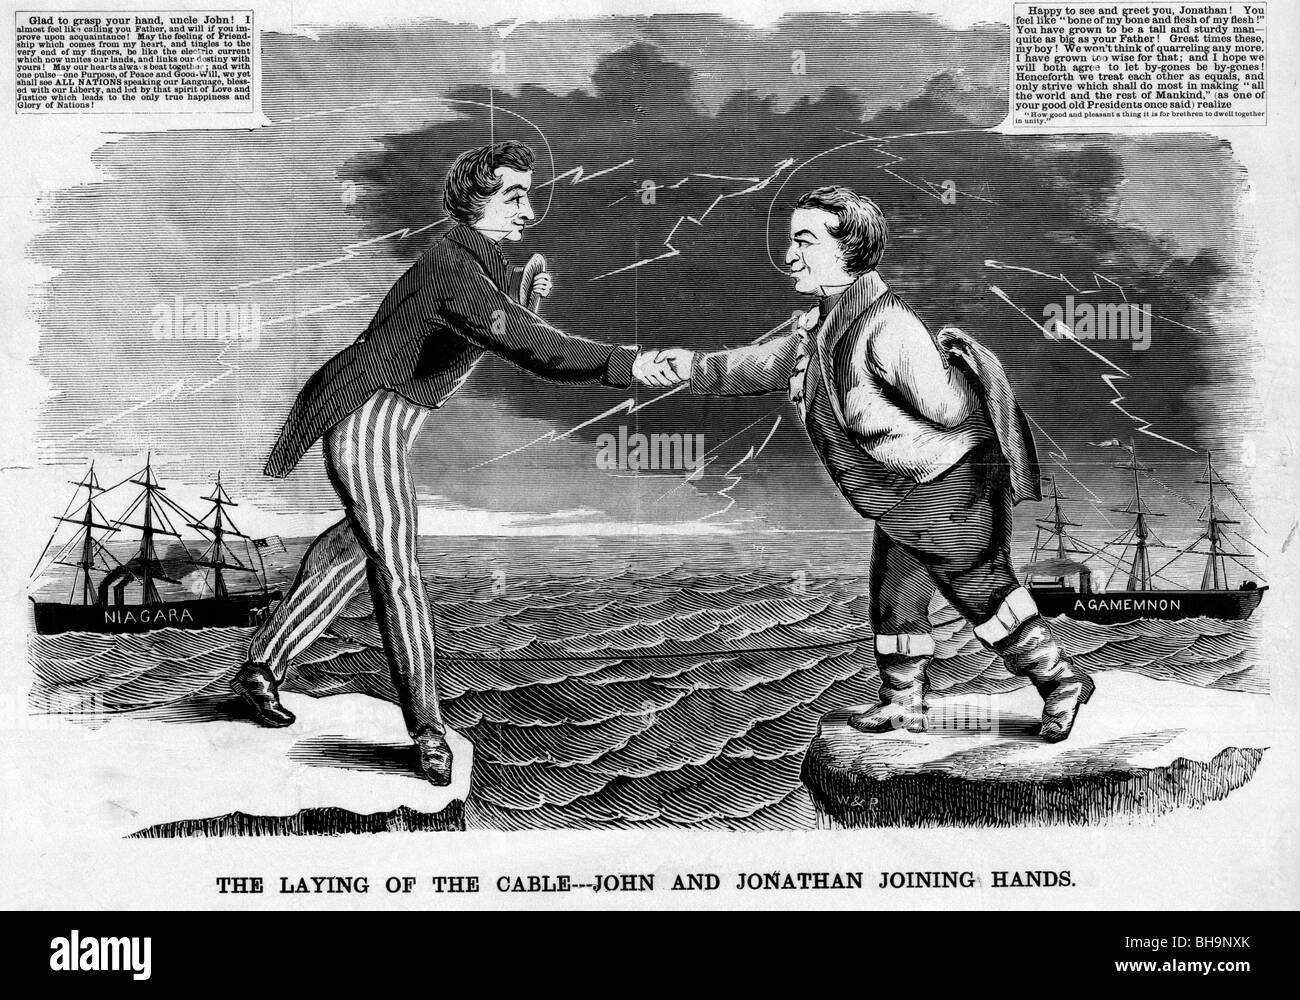 Die Verlegung des Kabels---John und Jonathan verbinden Hände - Cartoon zum Gedenken an das transatlantische Kabel - 17. August 1858. Stockfoto